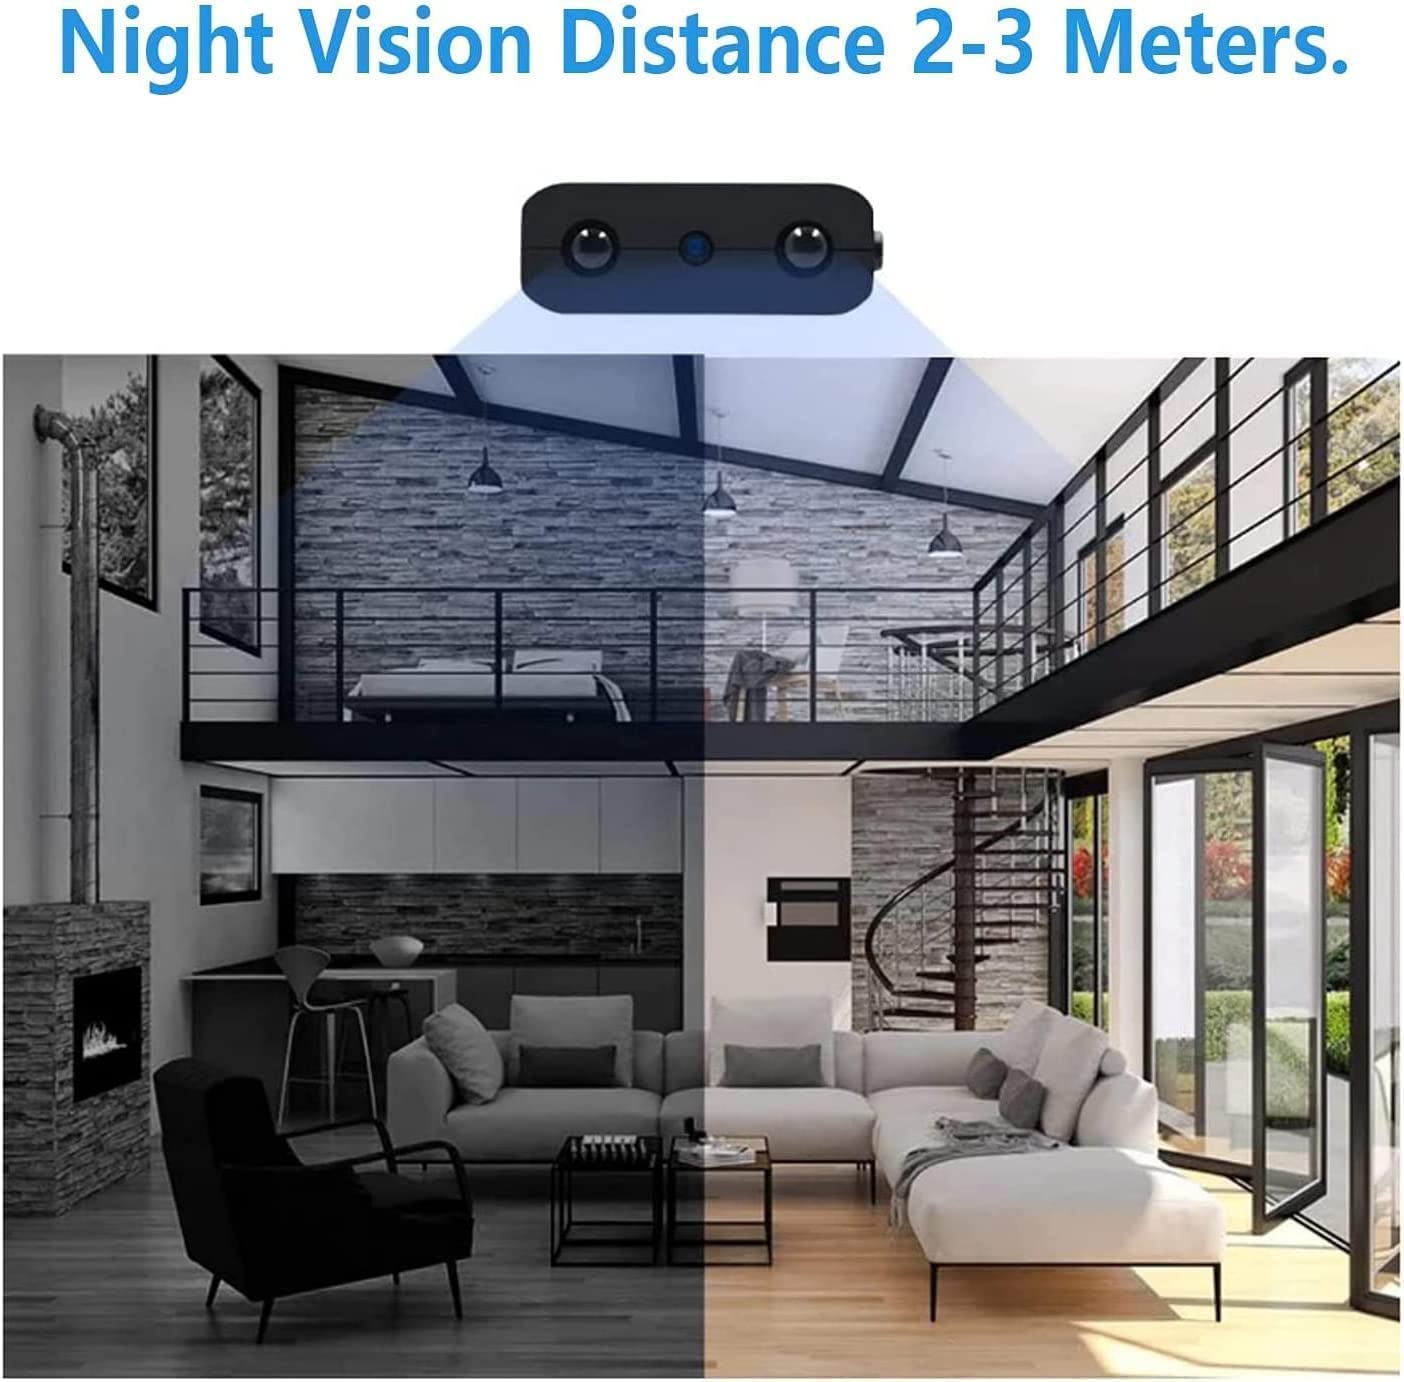 Cámara inalámbrica Mini cámara espía oculta portátil pequeña  Características con cámara Body Pet HD 1080P, visión nocturna y detección  de movimiento para el hogar y la oficina al aire libre.